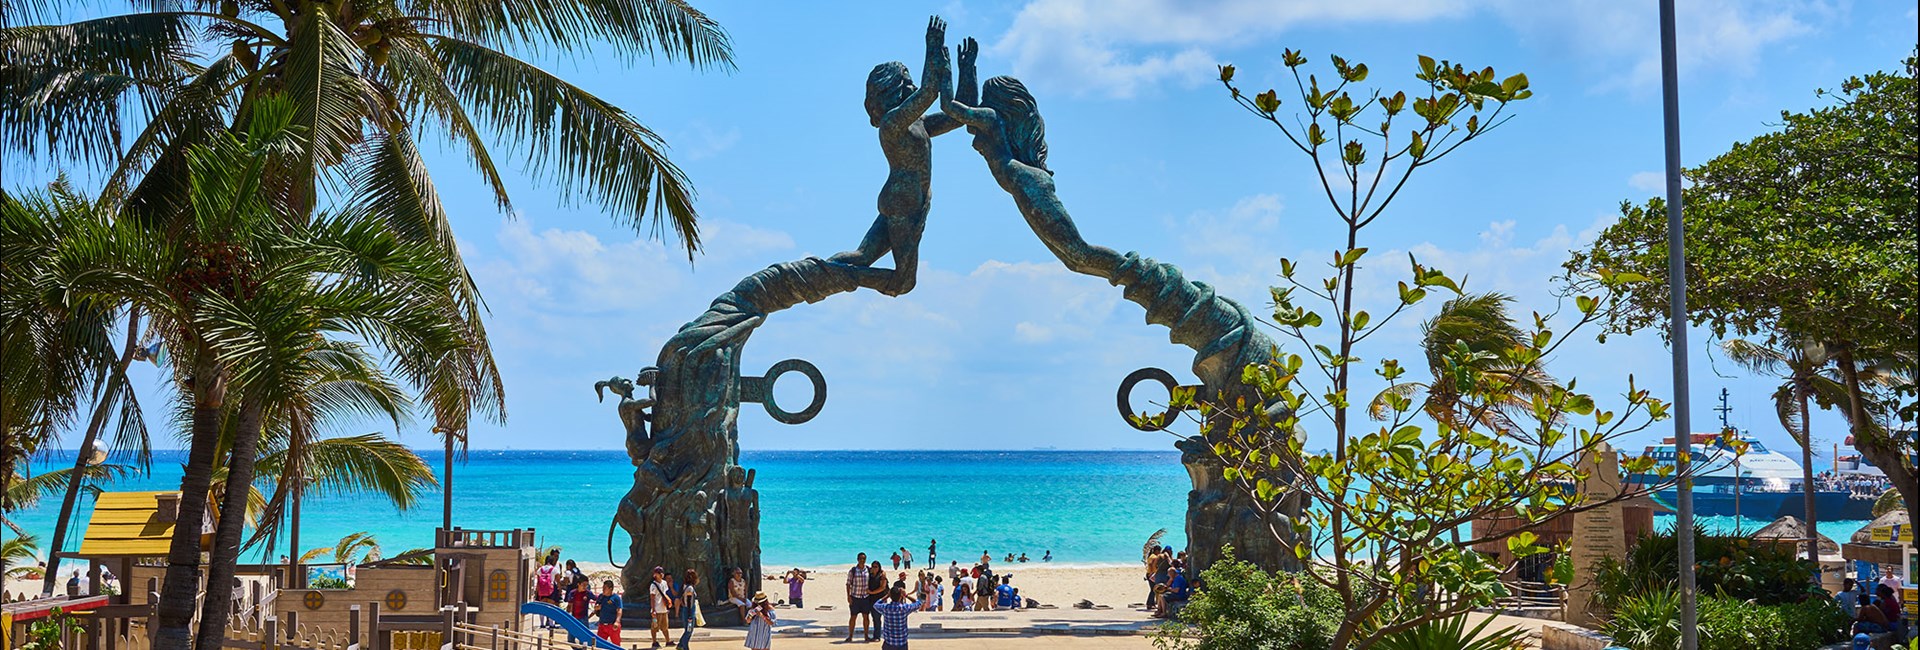 Tall mermaid statue at a public beach in Mexico